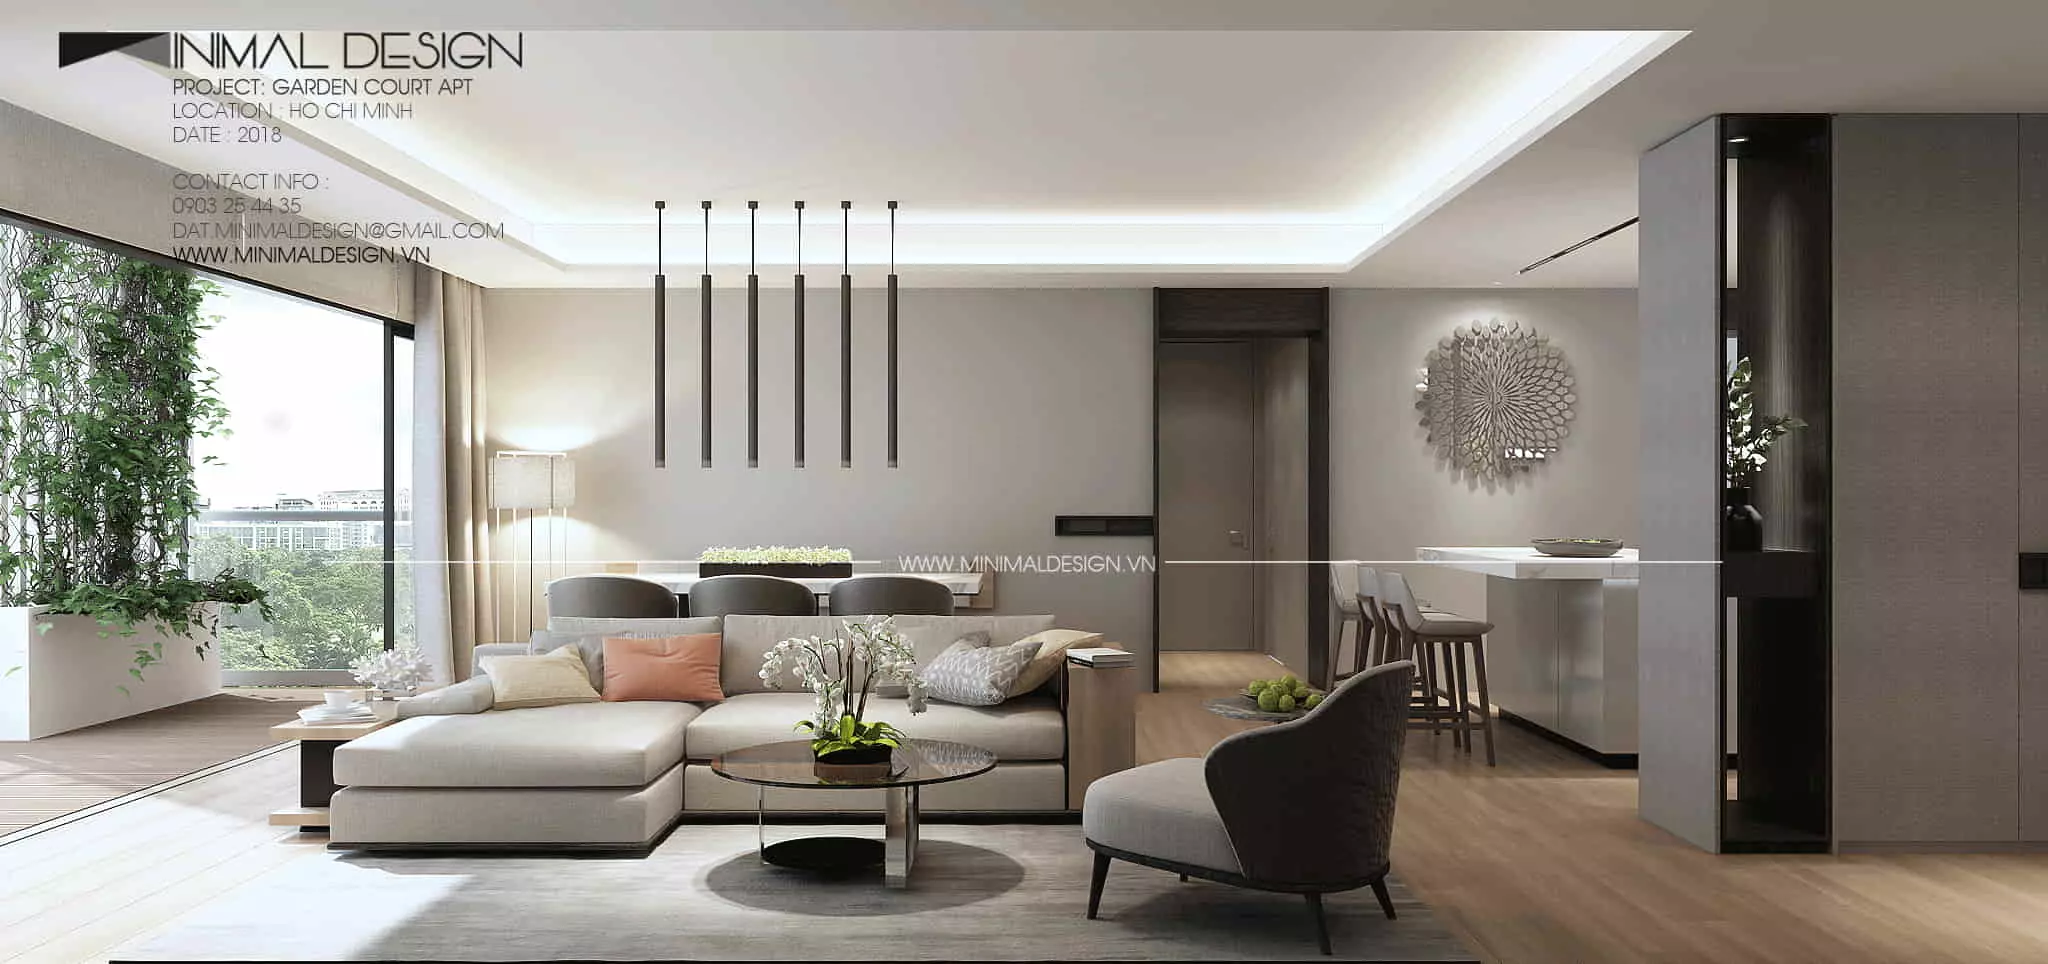 Trang trí phòng khách tối giản cho căn hộ nhỏ là bài viết giúp bạn bổ sung thêm ý tưởng trong việc “biến đổi” không gian nơi sinh hoạt chung